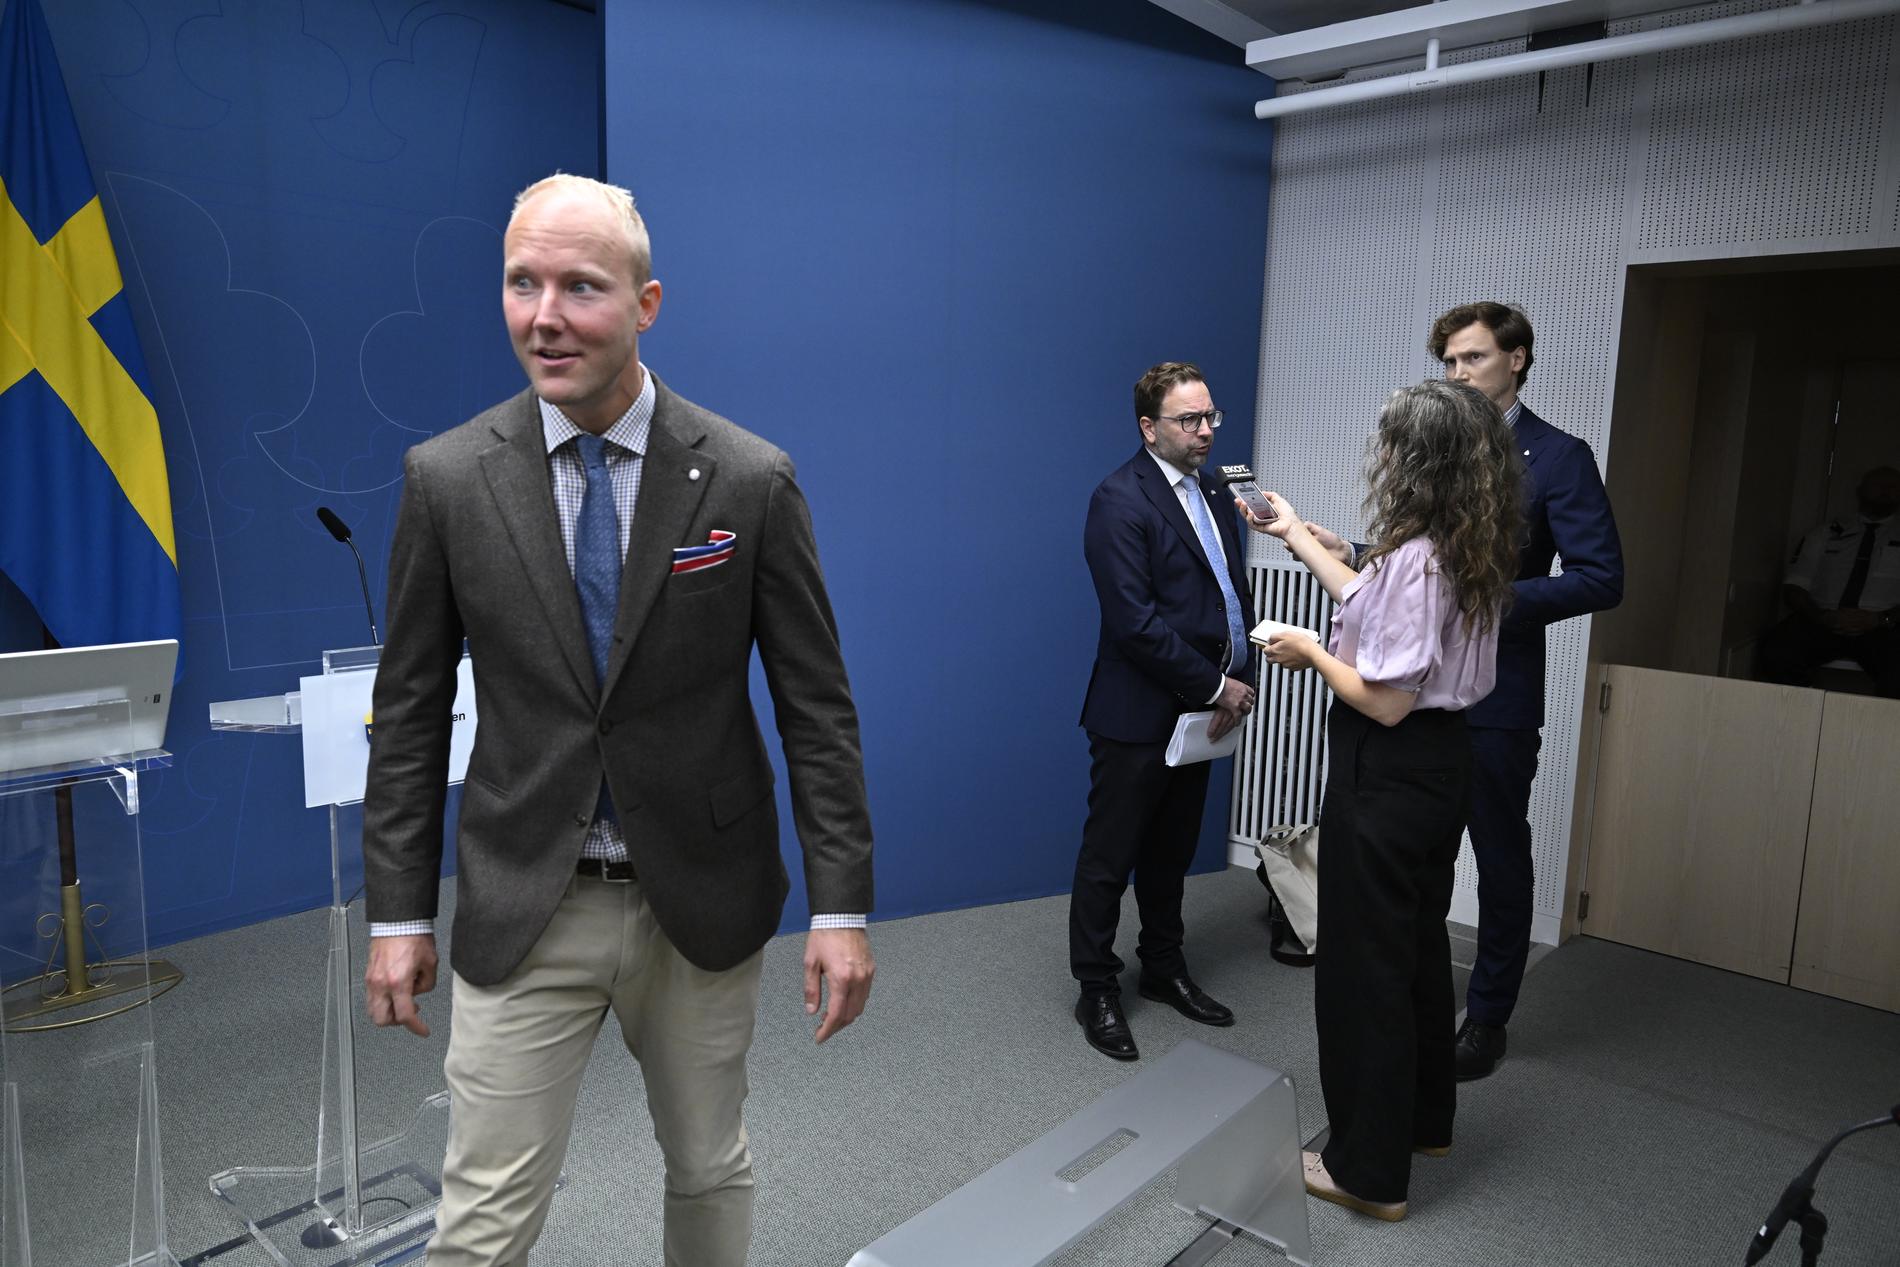 SD:s Ludvig Aspling går iväg medan Liberalernas Fredrik Malm intervjuas efter pressträffen. 